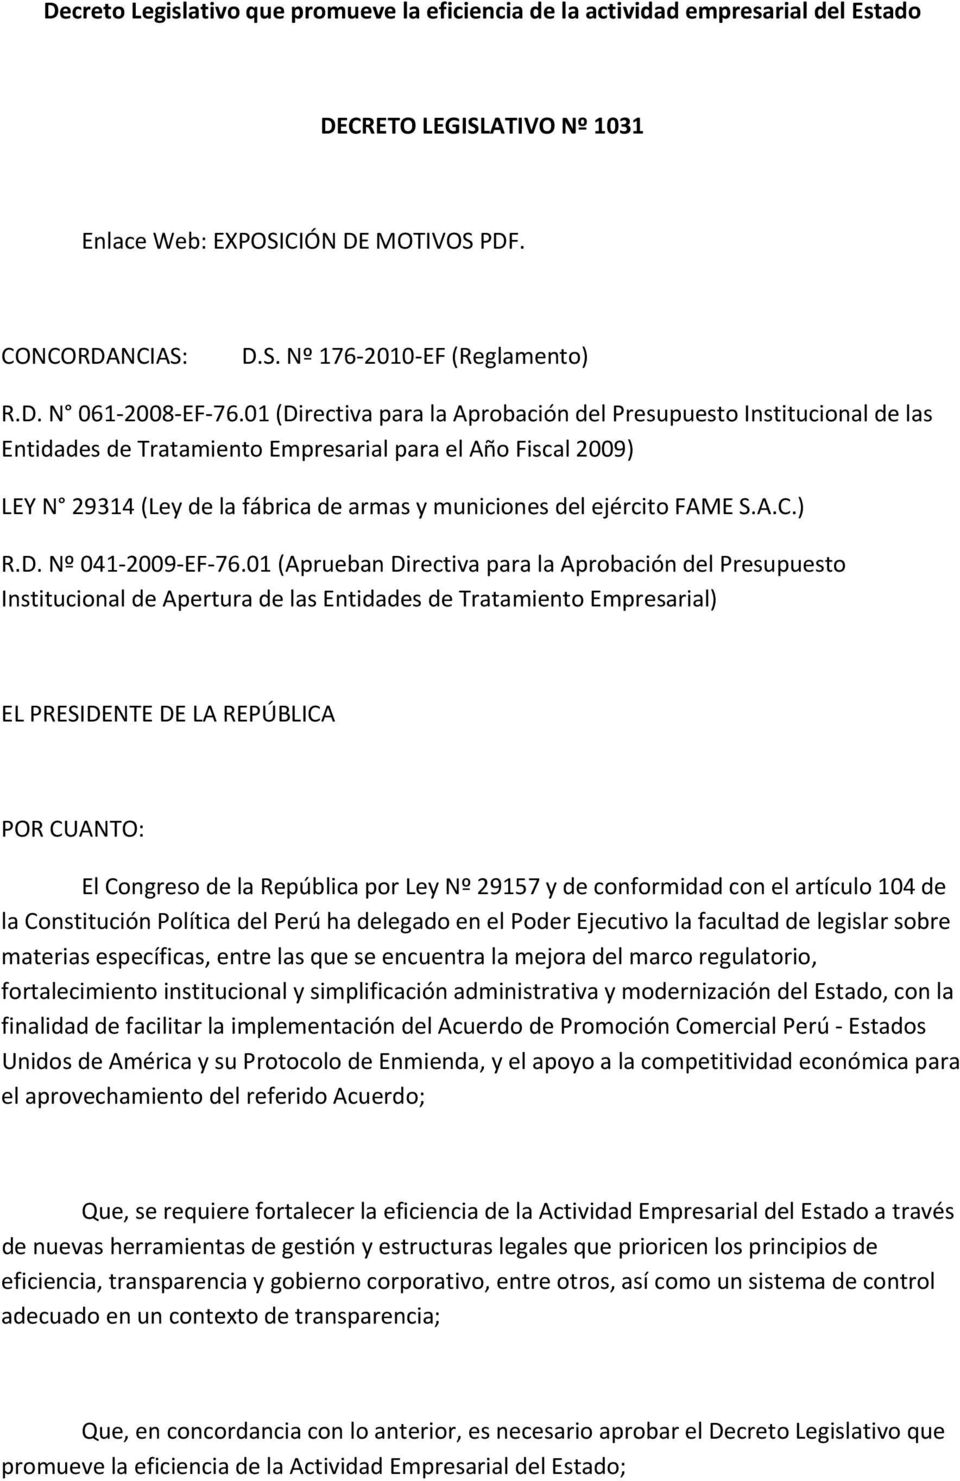 01 (Directiva para la Aprobación del Presupuesto Institucional de las Entidades de Tratamiento Empresarial para el Año Fiscal 2009) LEY N 29314 (Ley de la fábrica de armas y municiones del ejército